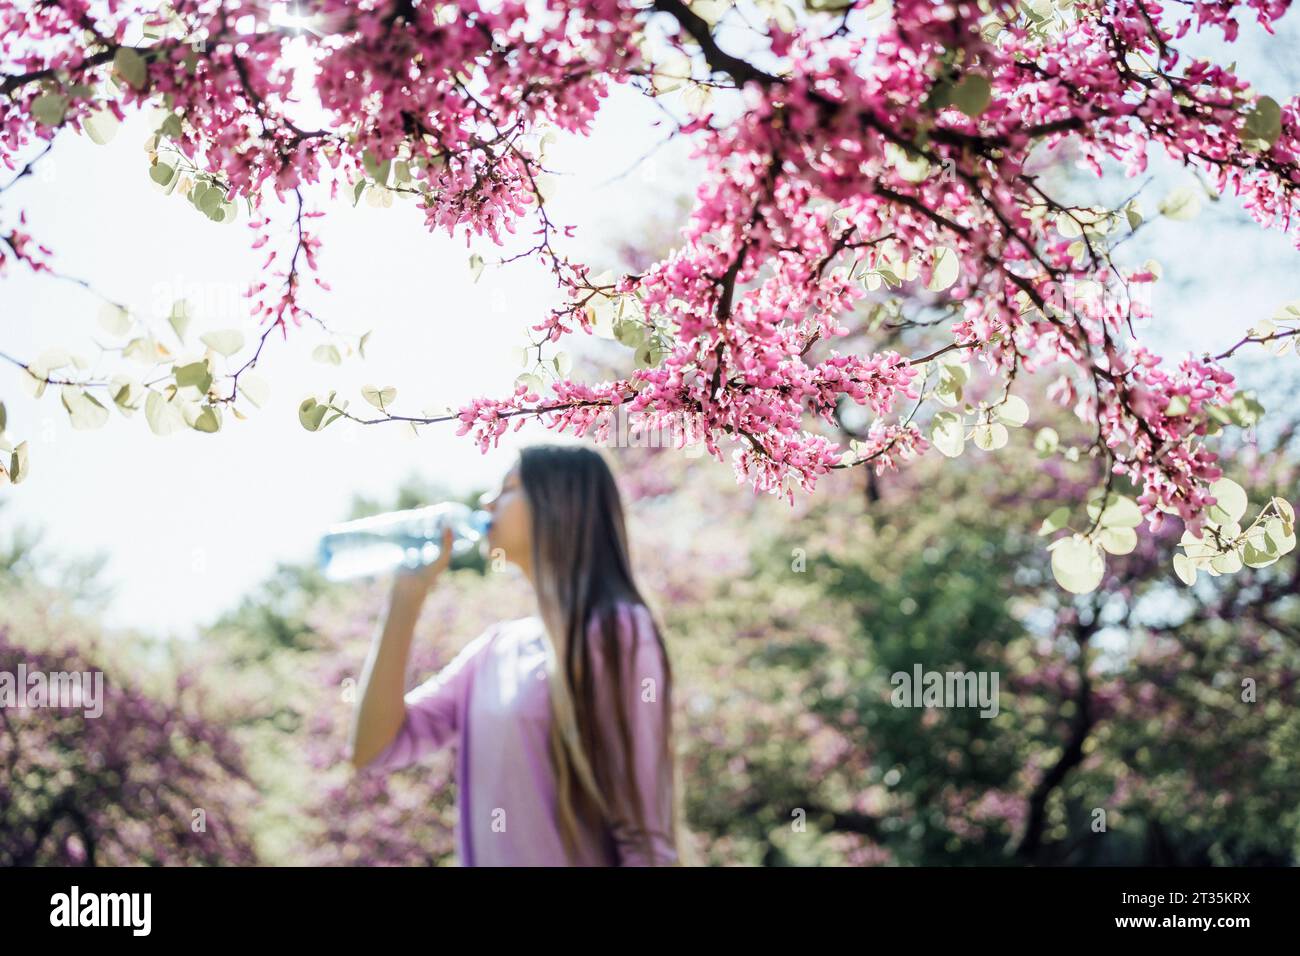 Ramo di albero rosa fiorito con acqua potabile da ragazza adolescente sullo sfondo Foto Stock